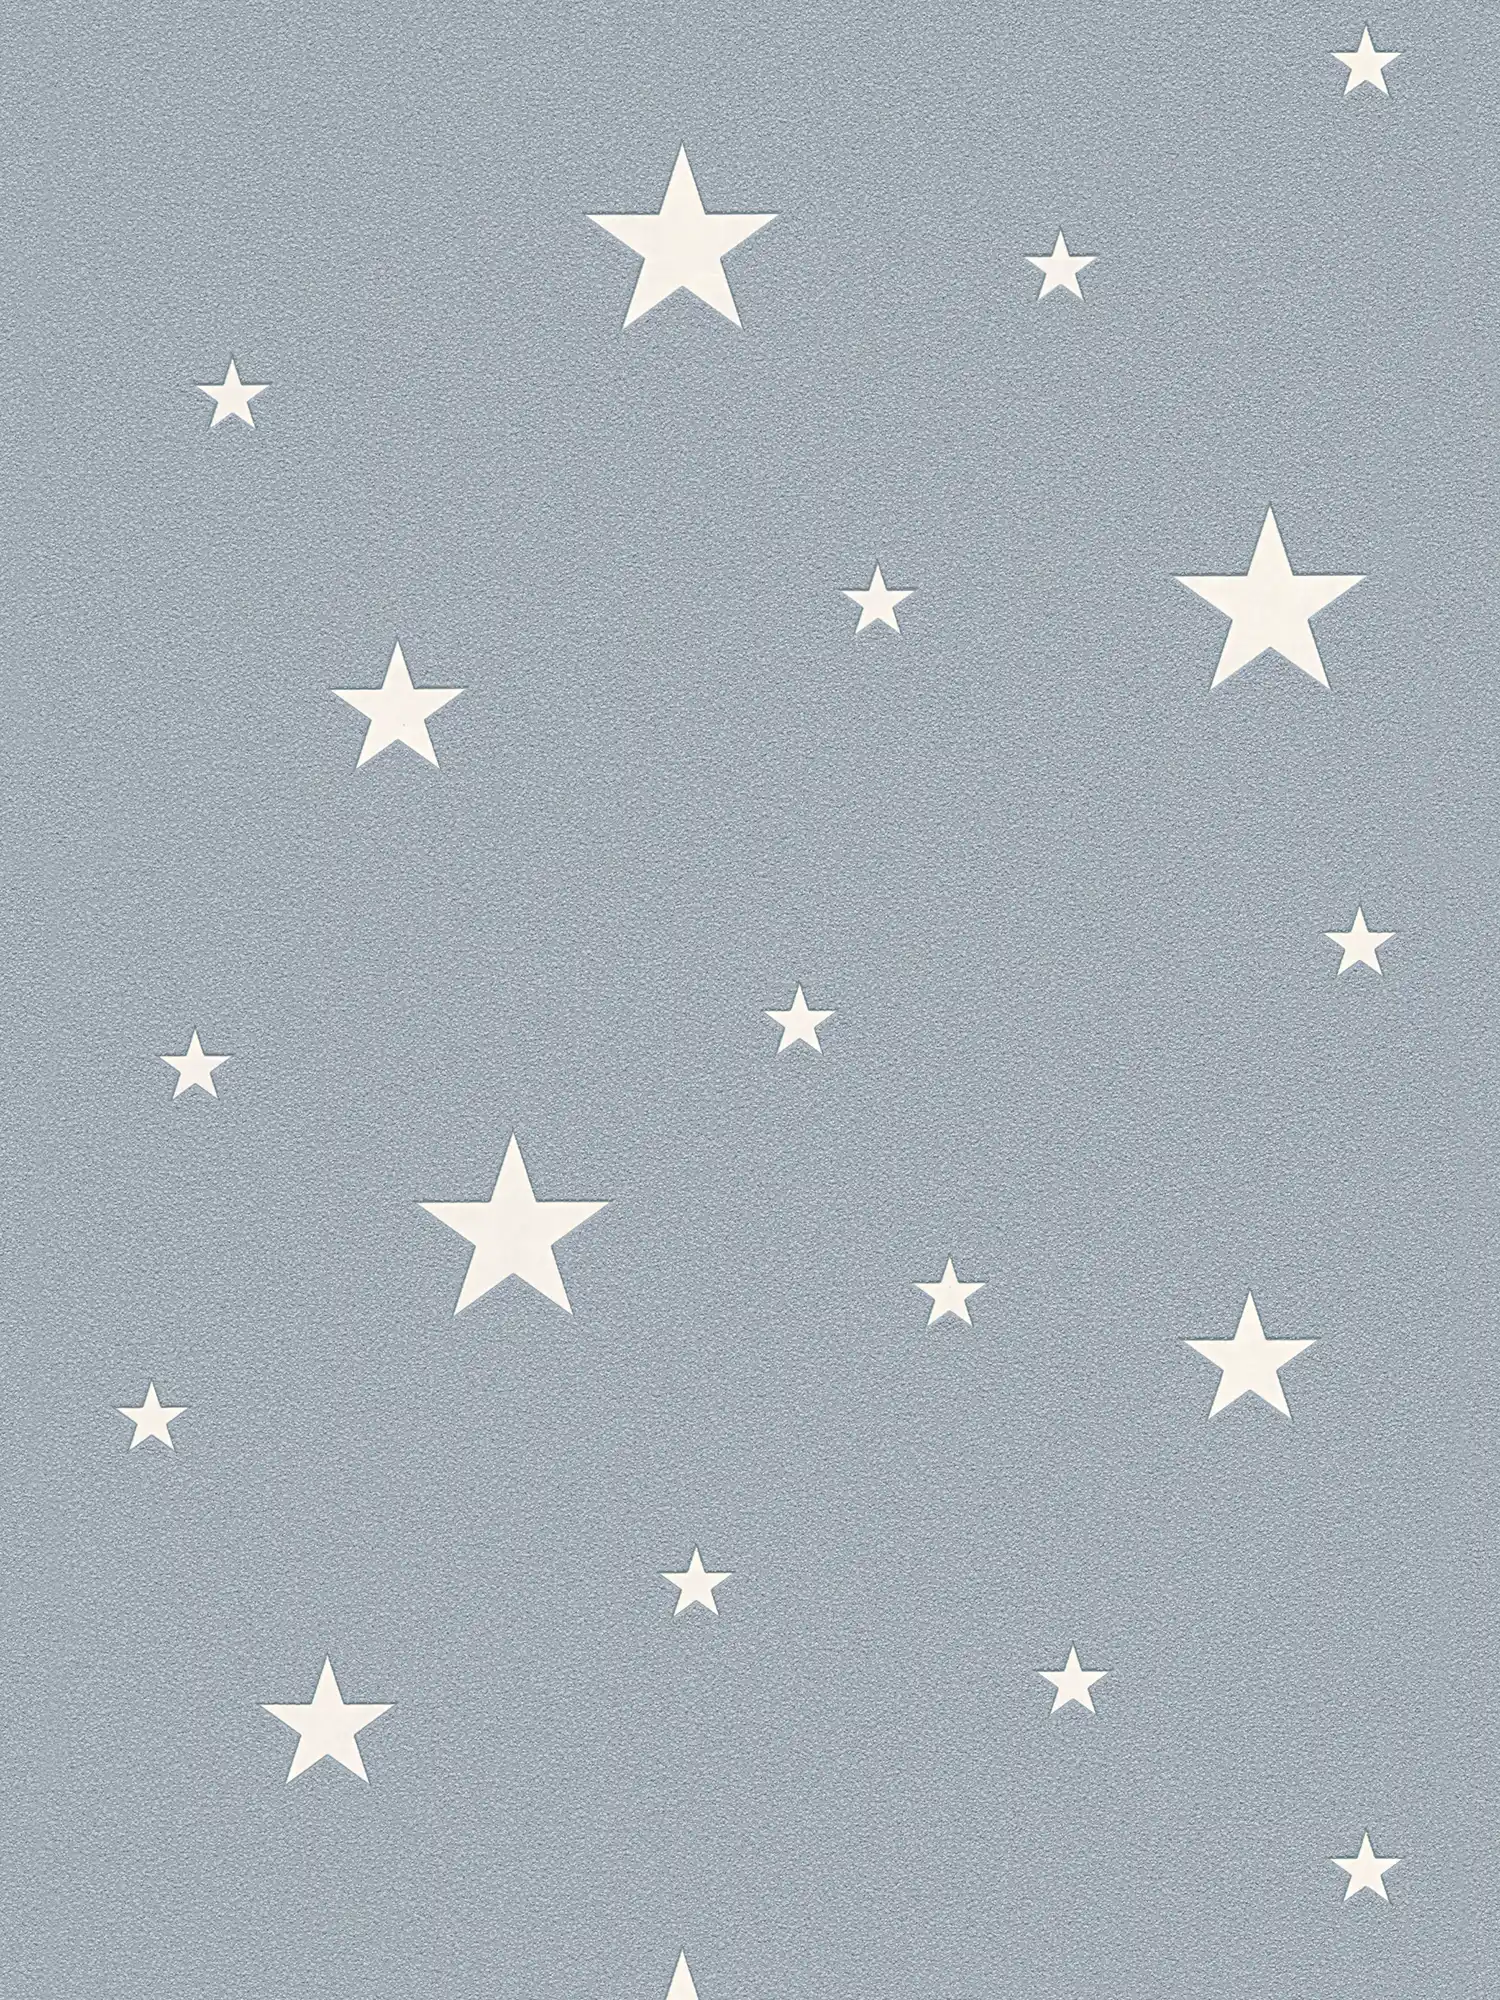 Glow-in-the-dark kinderkamer behang met lichtgevende sterren - smoke blue
